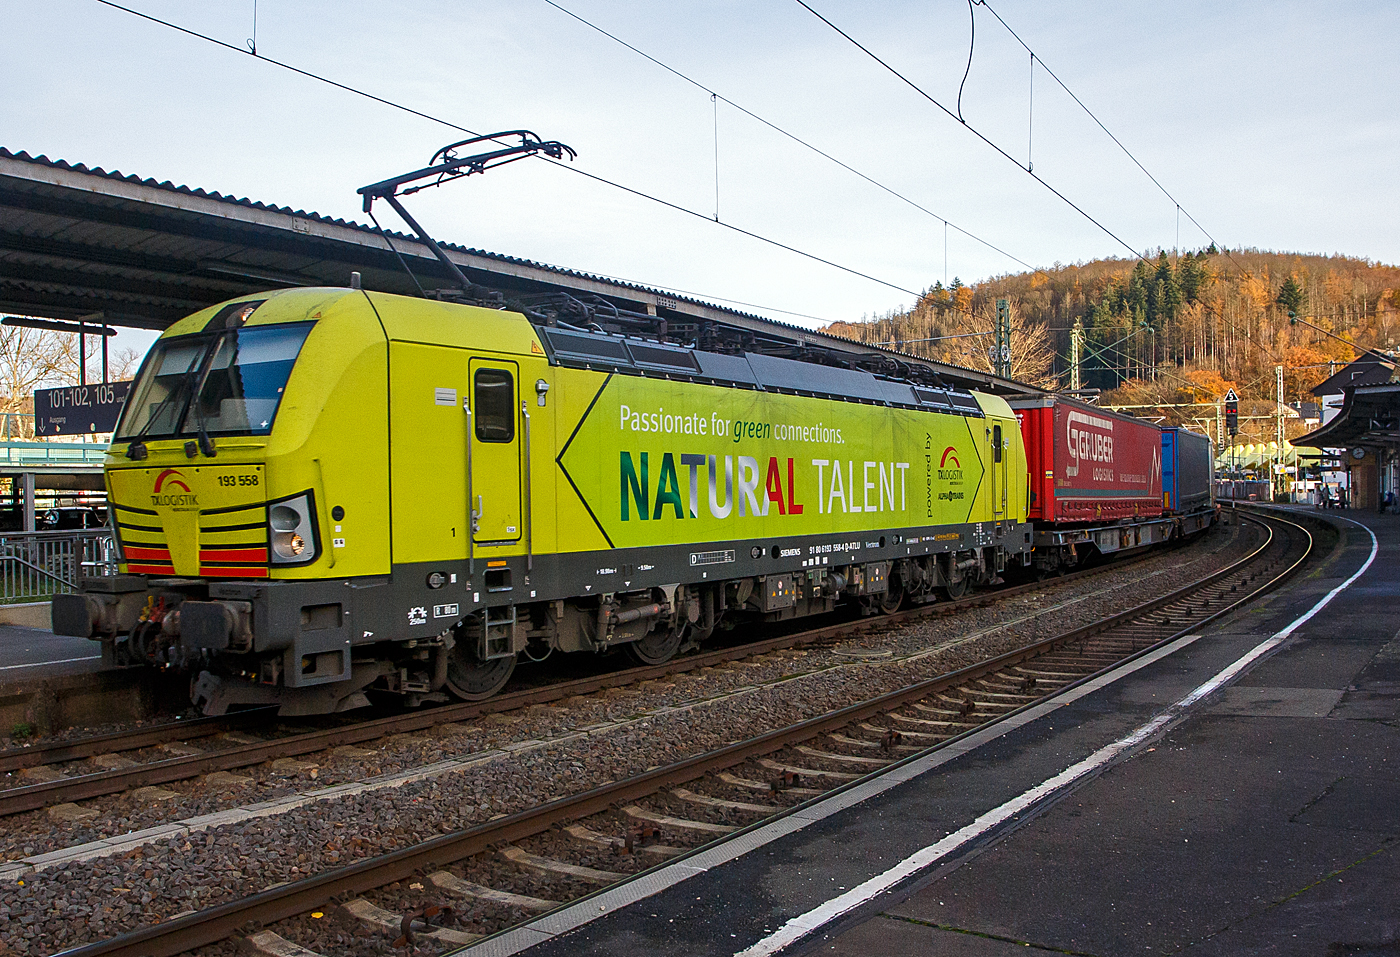 Nach langer Enthaltsamkeit konnte ich am 22 November 2023 endlich mal wieder Güterzüge auf den Siegstrecke ablichten, hier fährt die an die TX Logistik AG (Troisdorf) vermietete Siemens Vectron MS 193 558 „Natural Talent“ (91 80 6193 558-4 D-ATLU) der Alpha Trains Luxembourg s.à.r.l. (Luxembourg) mit einem KLV-Zug durch Betzdorf (Sieg) in Richtung Köln.

Die Vectron Lokomotive ist als MS – Lokomotive (Mehrsystemlok) mit 6.400 kW konzipiert und zugelassen für Deutschland, Österreich und Italien.

Die TX Logistik AG (TXL) ist ein im Jahr 1999 in Bad Honnef gegründetes Eisenbahnverkehrsunternehmen mit heutigem Sitz in Troisdorf, das heute zur Mercitalia Group gehört, die wiederum ein 100 prozentiges Tochterunternehmen der italienischen Staatsbahn Ferrovie dello Stato Italiane FS ist. Mittlerweile gehört das Unternehmen mit zu den Größten für den Schienengüterverkehr in Europa.

Das Unternehmen bietet den ganzen Umfang an Schienengüterverkehr, inklusive Containertransport und kombiniertem Verkehr an. Wichtigste Transportstrecken sind von den Häfen Hamburg, Bremerhaven, Rotterdam und Antwerpen nach Süddeutschland, Schweiz, Österreich und Italien.